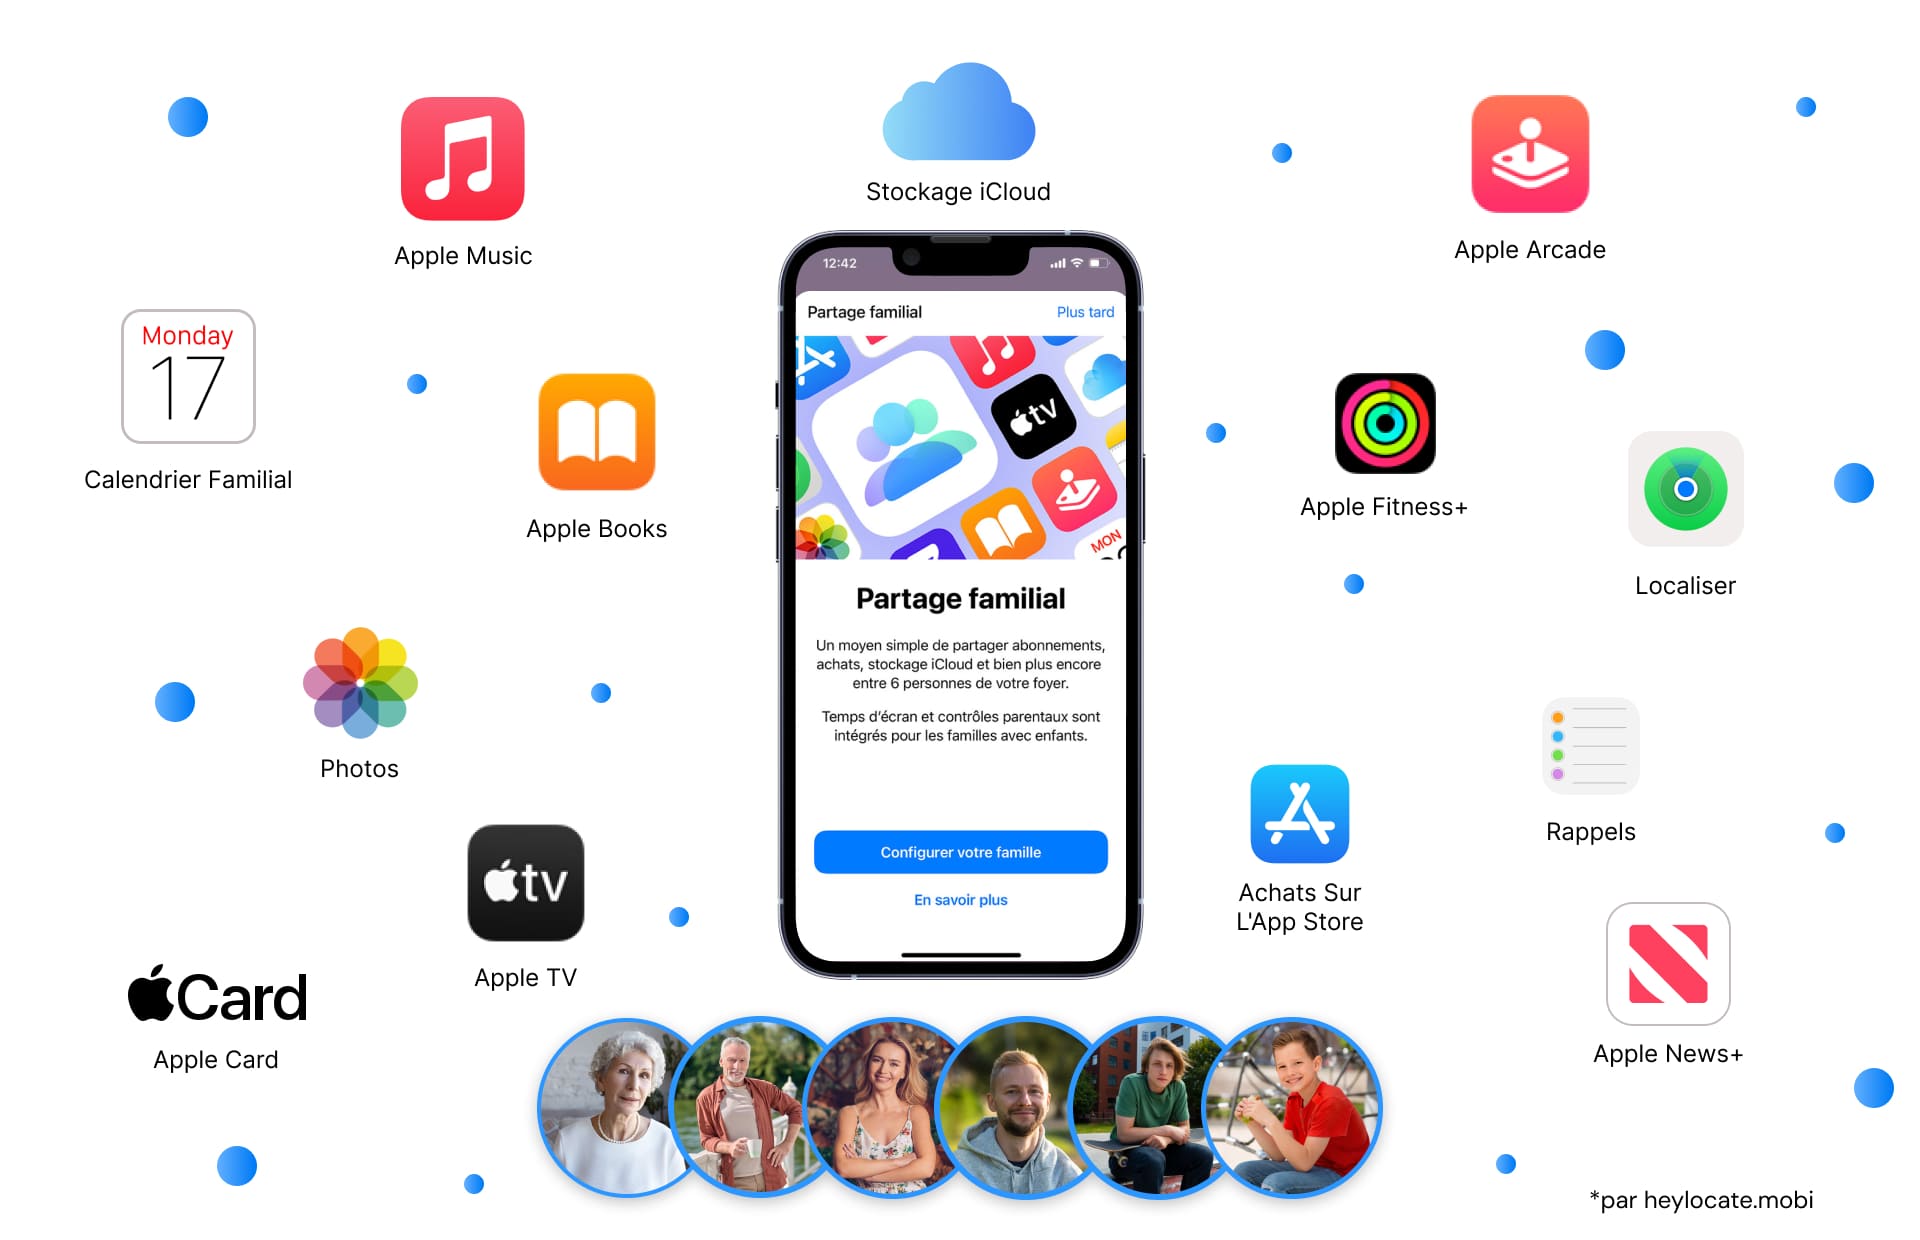 Une image affichant un écran d'iPhone avec la notification de configuration du Partage Familial, entourée par des icônes de divers services Apple comme Apple Music, Apple Books, iCloud, et plus